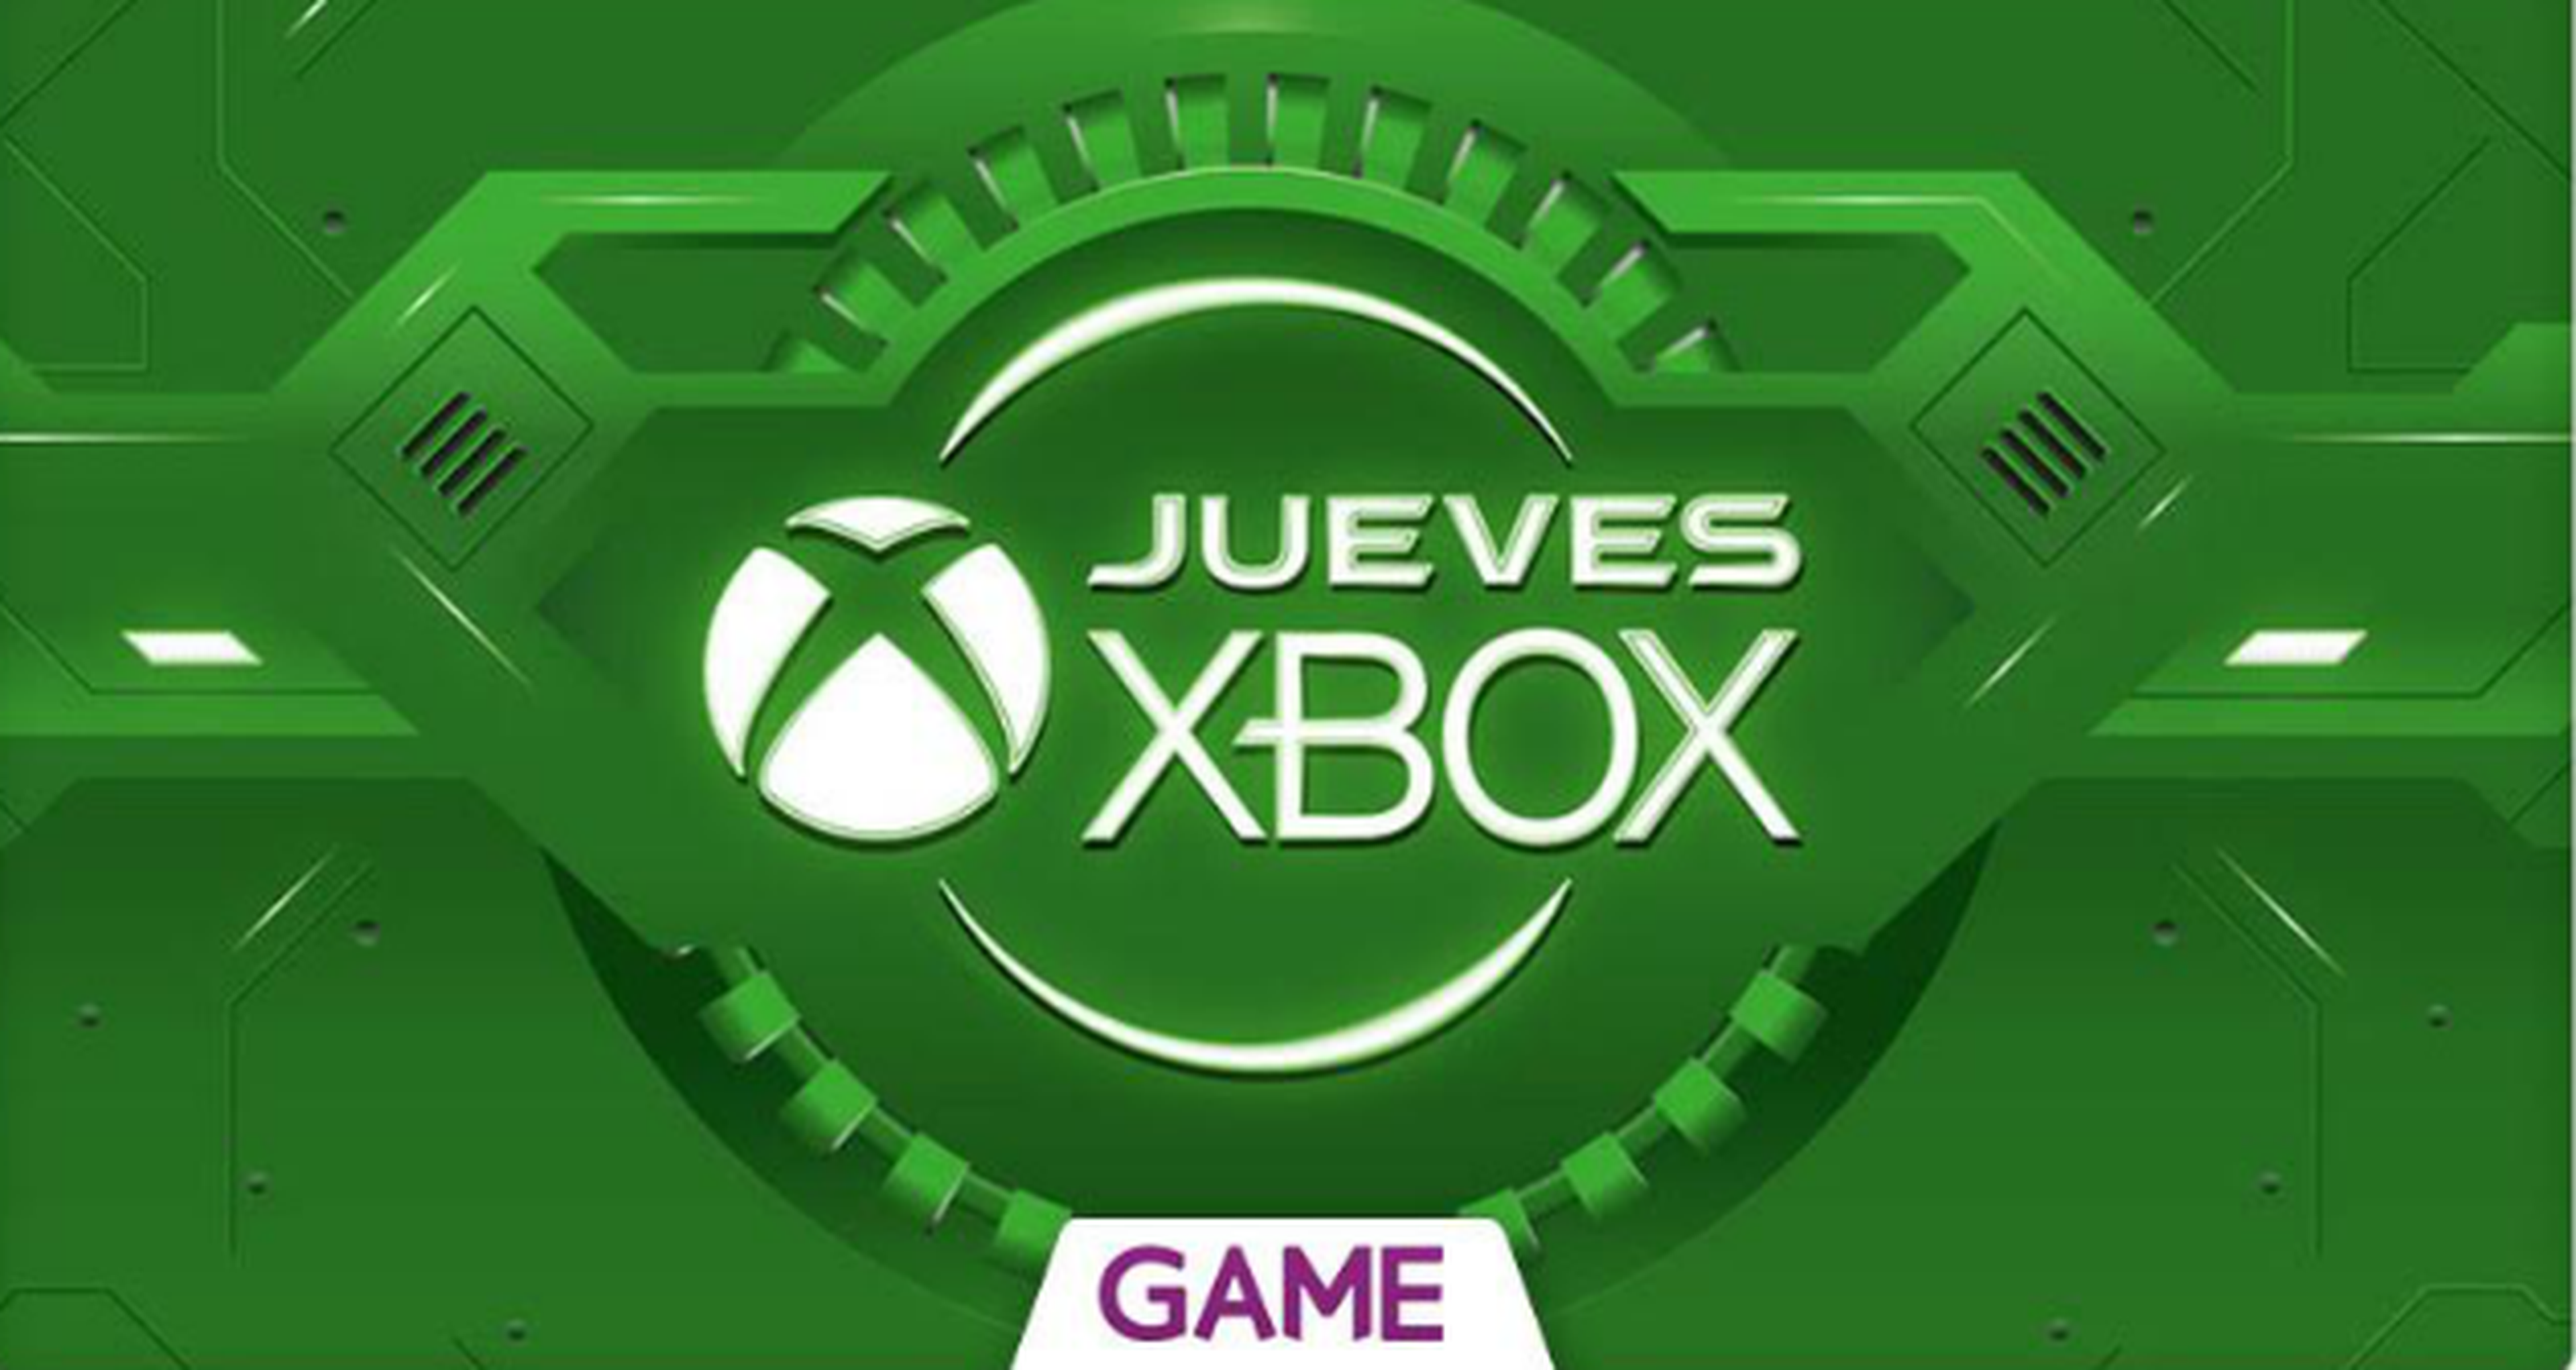 Jueves XBOX en GAME: 03/09/2015